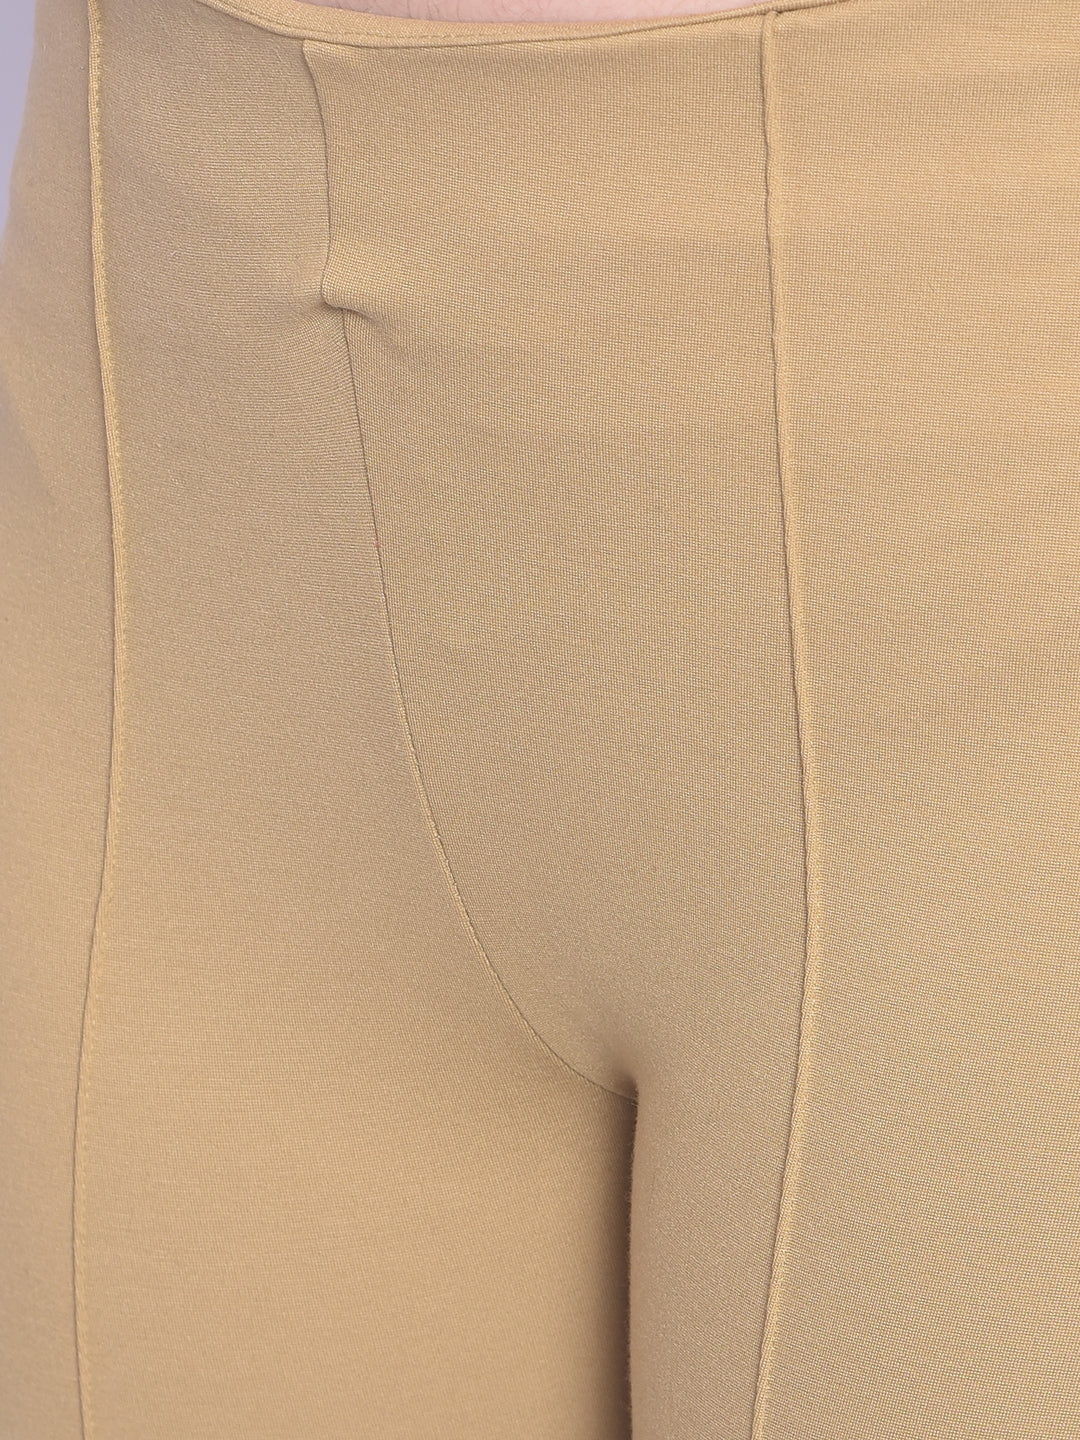 Beige Skinny Trousers-Women Trousers-Crimsoune Club